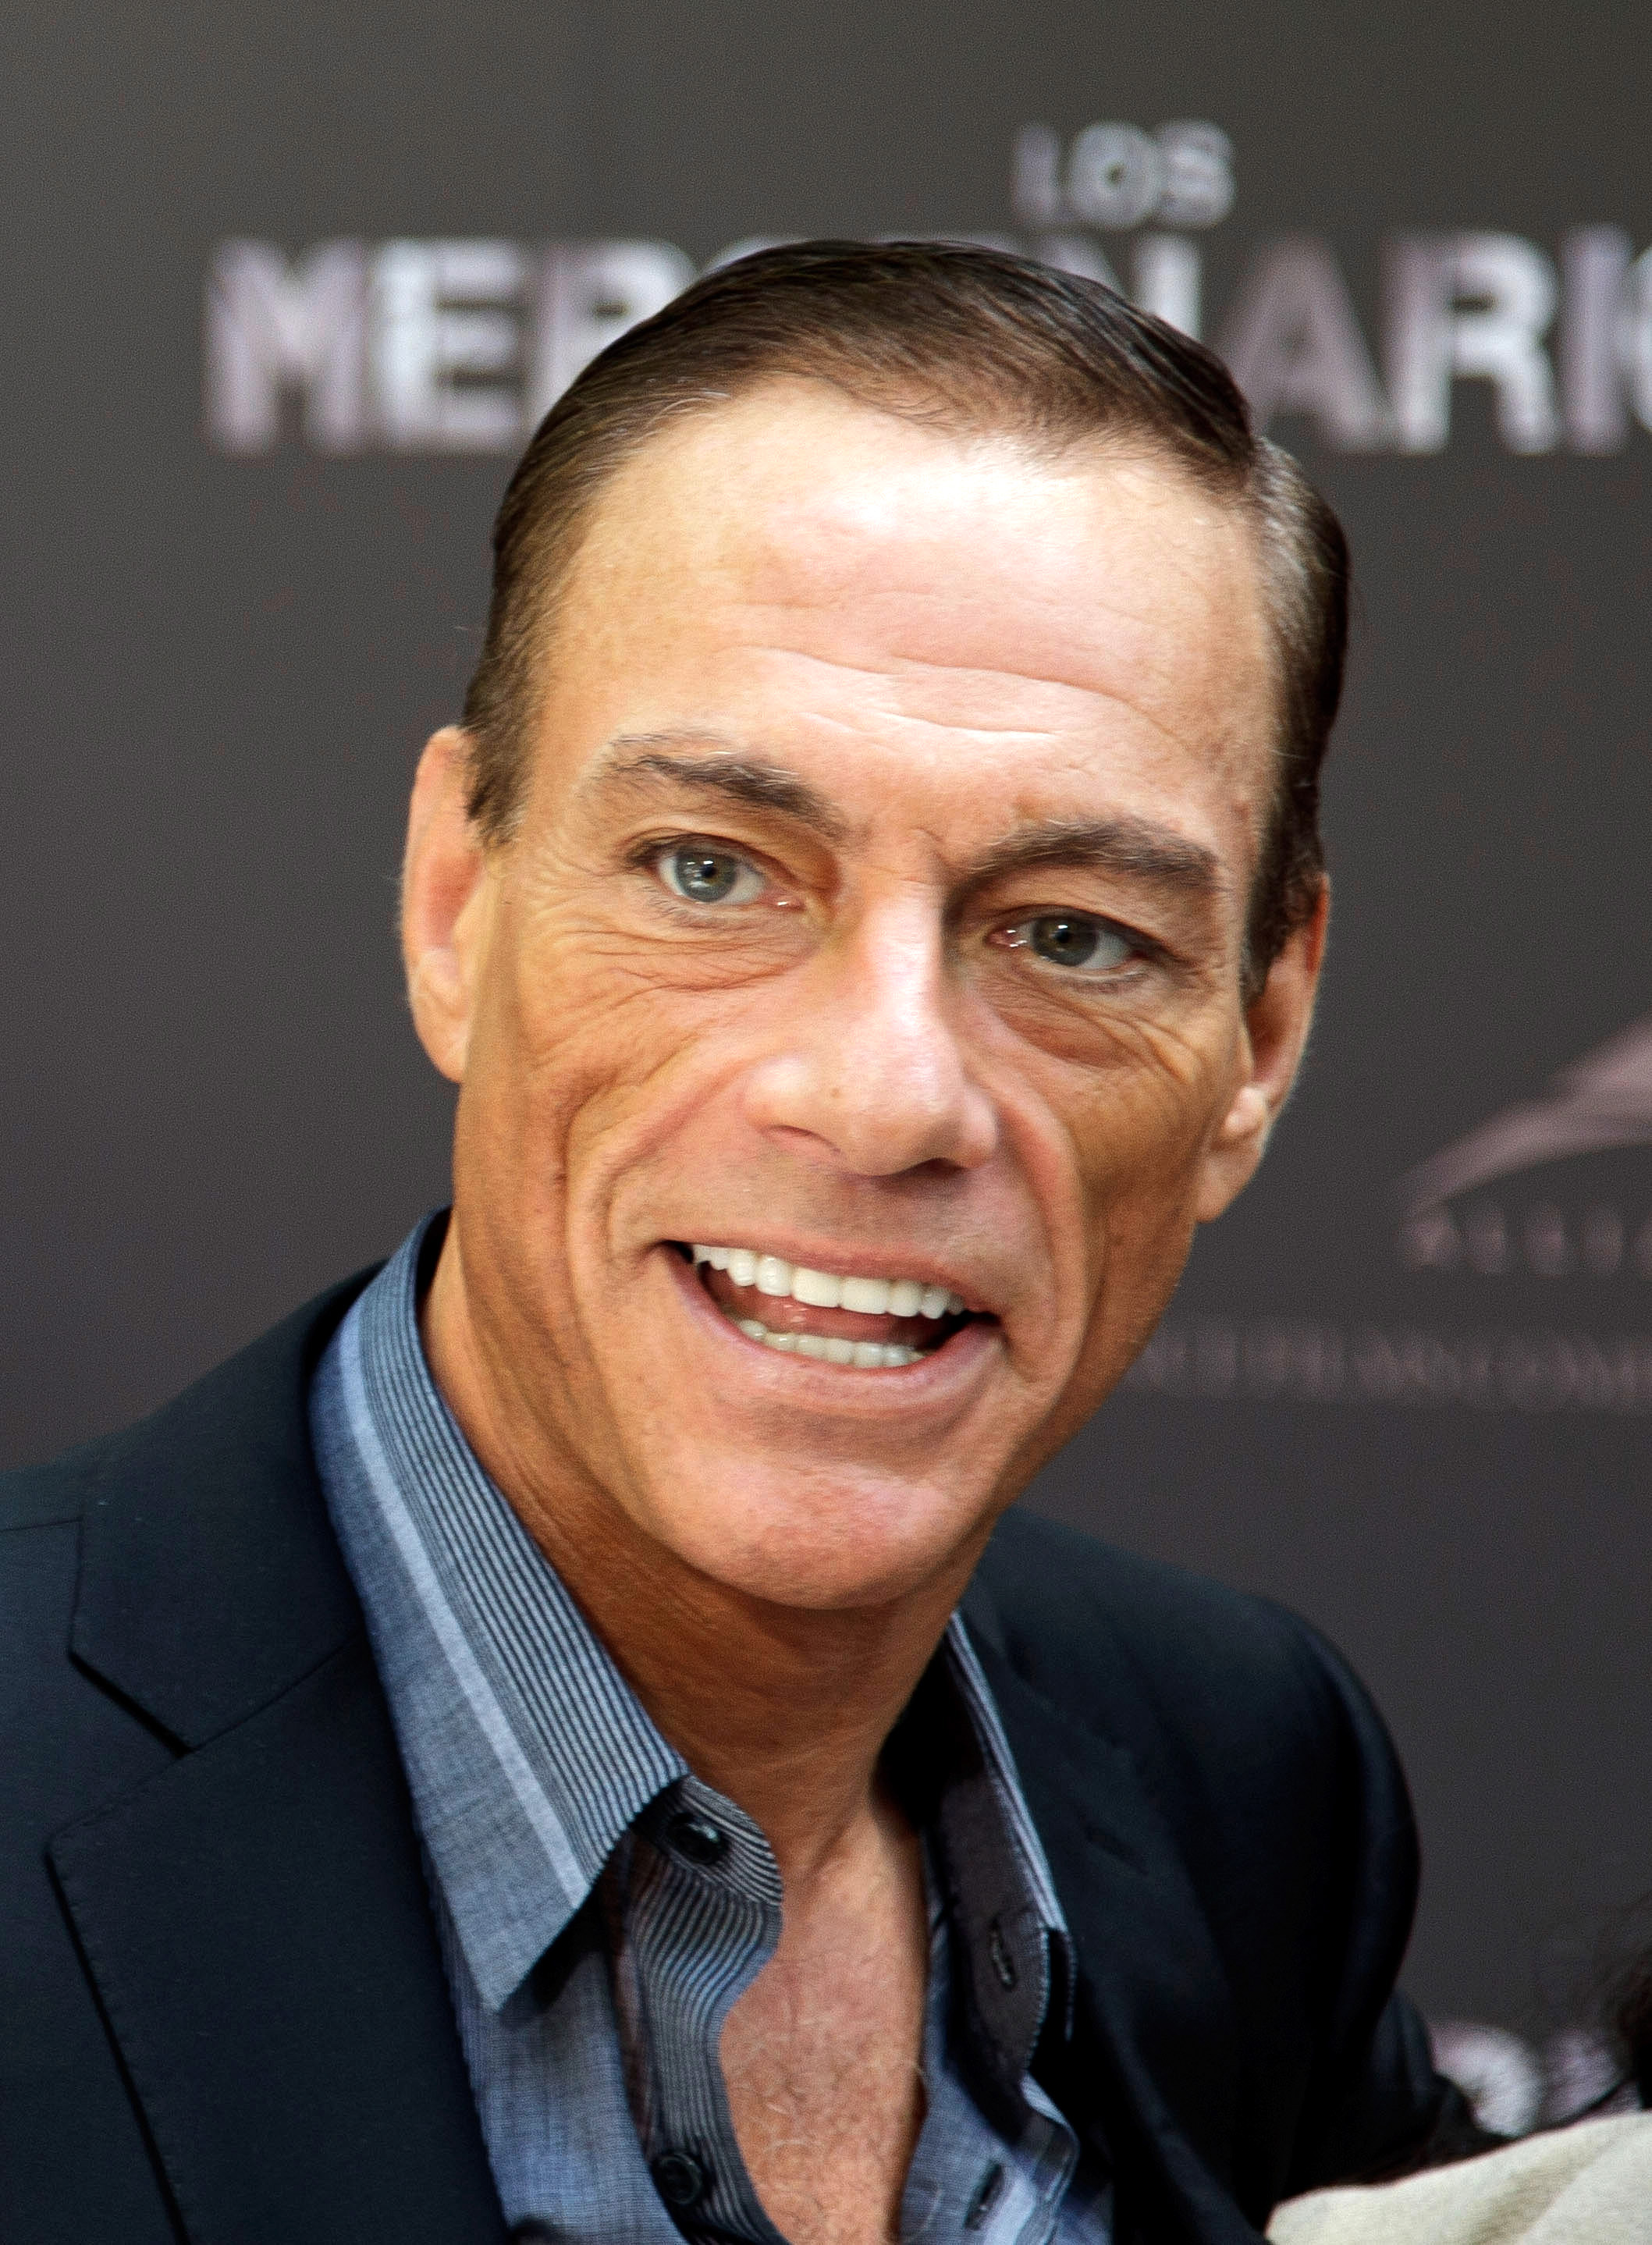 Jean-claude Van Damme #7